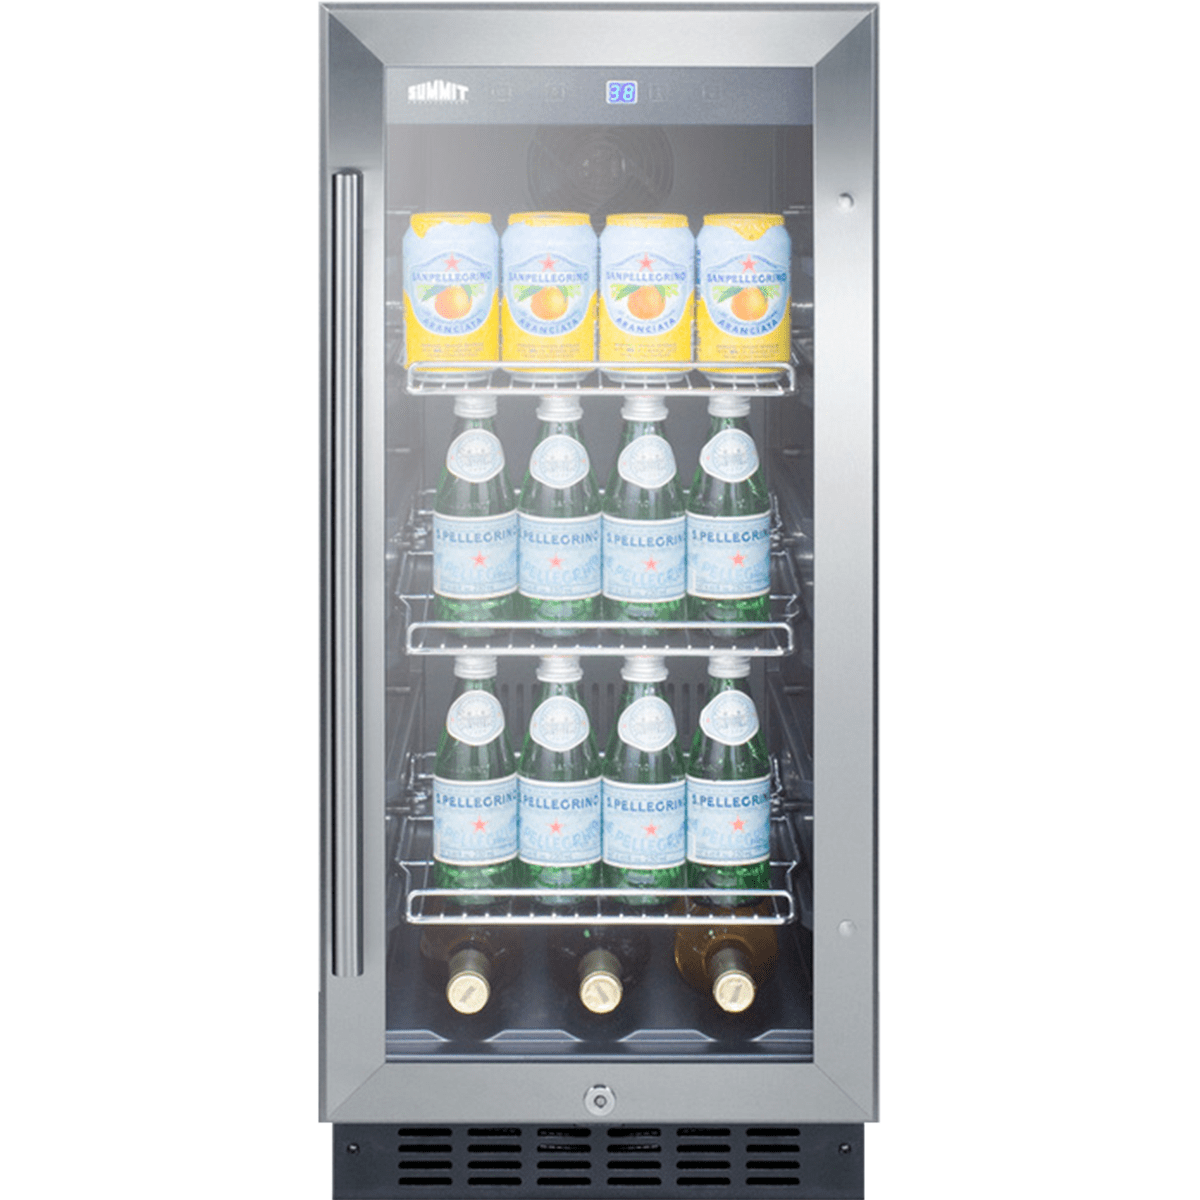 SUMMIT 15-Inch Built-In Glass Door Beverage Cooler (SCR1536BG)